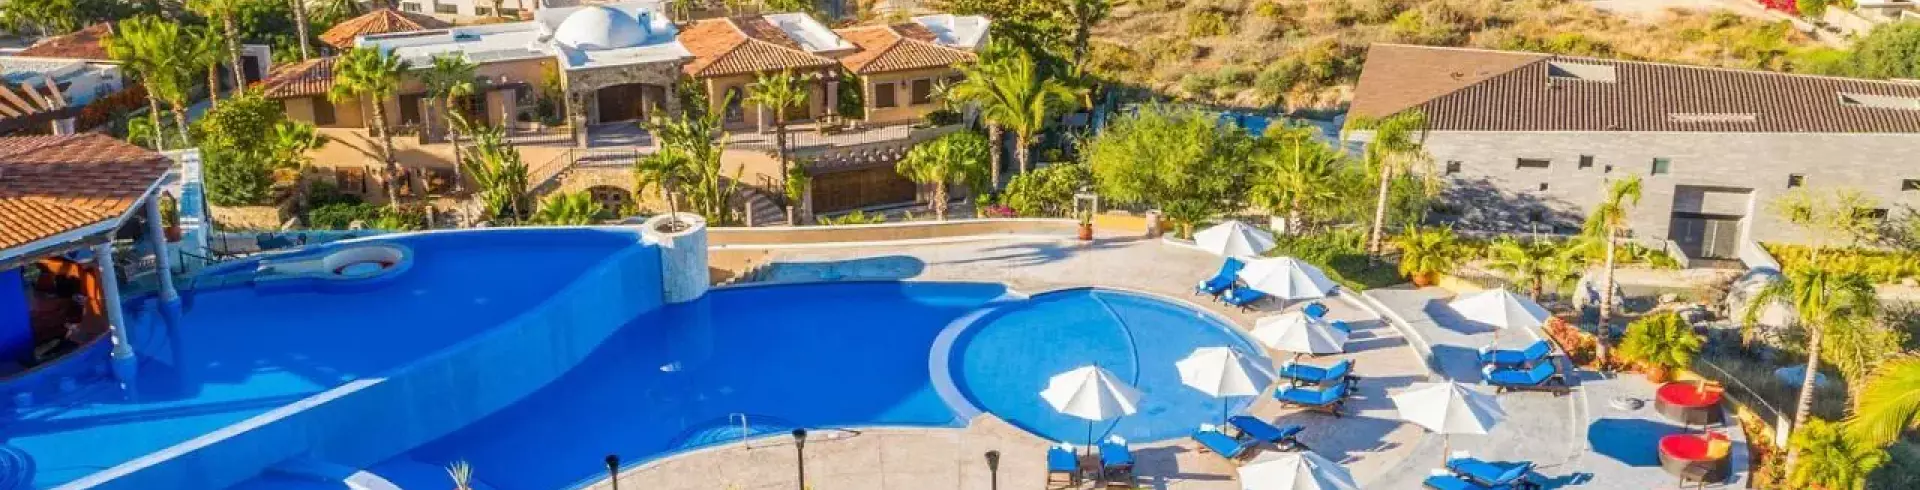 El Encanto Resort At Hacienda Encantada